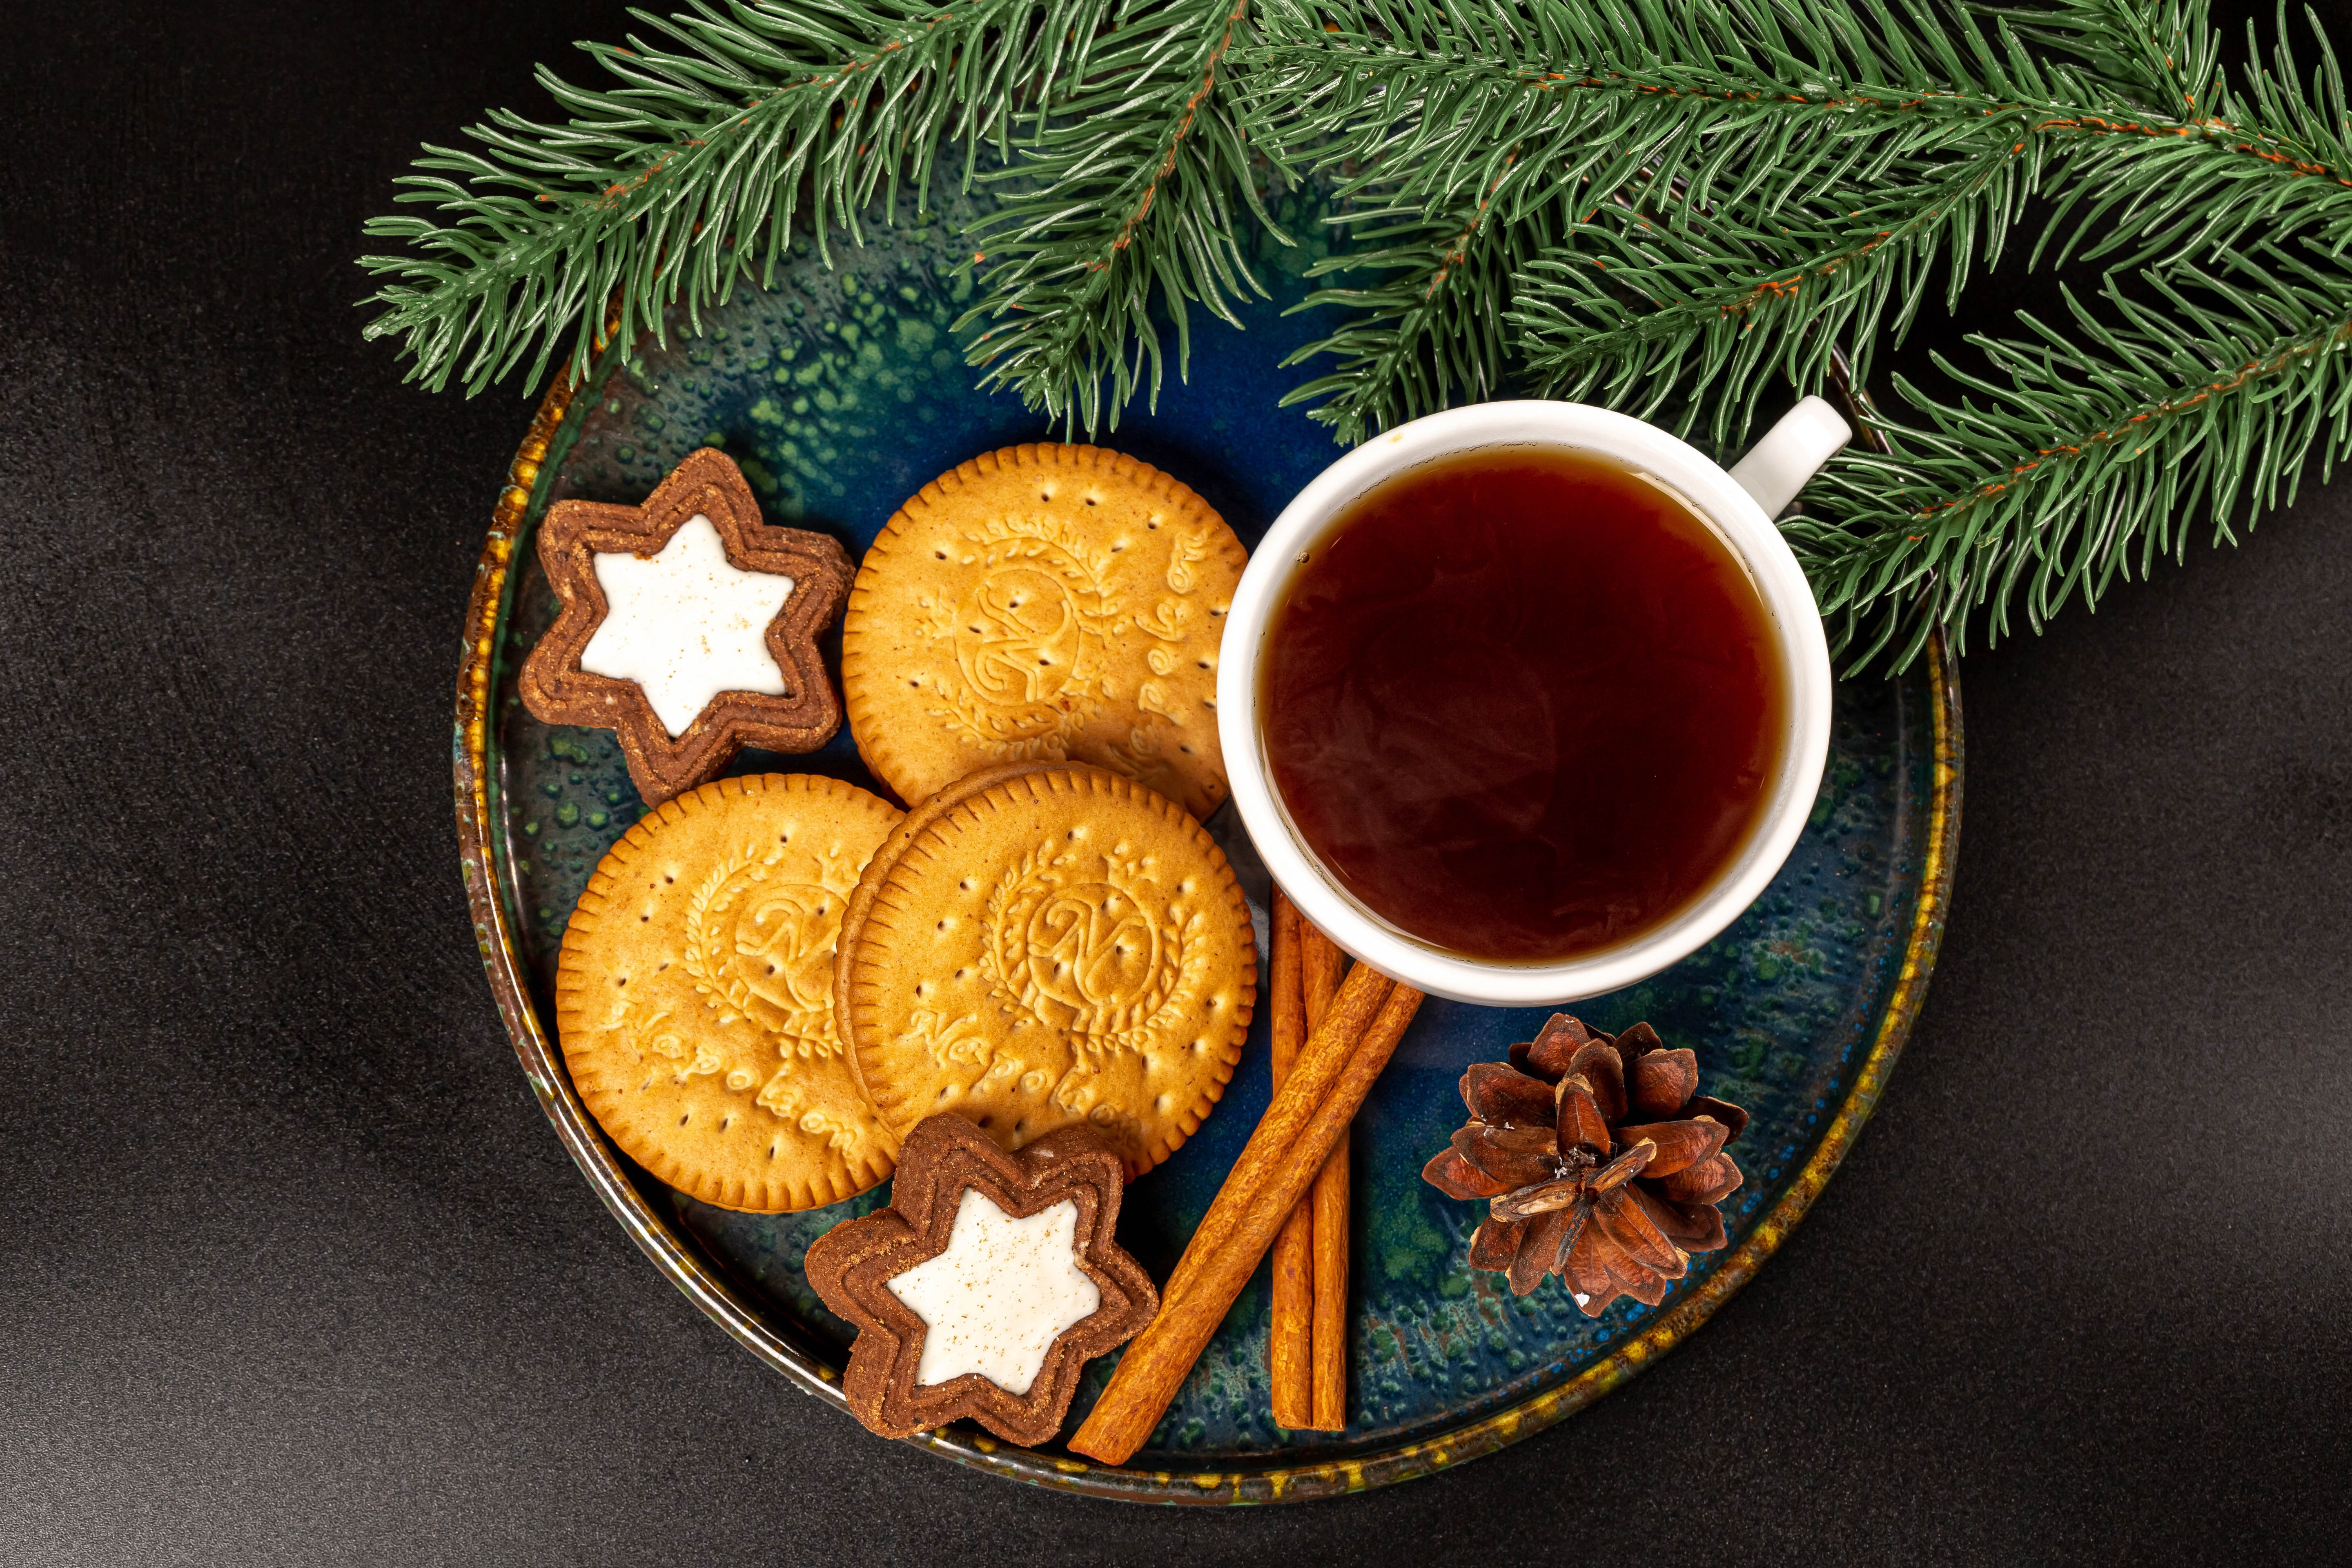 Download mobile wallpaper Cinnamon, Christmas, Holiday, Tea, Mug, Cookie, Pine Cone for free.